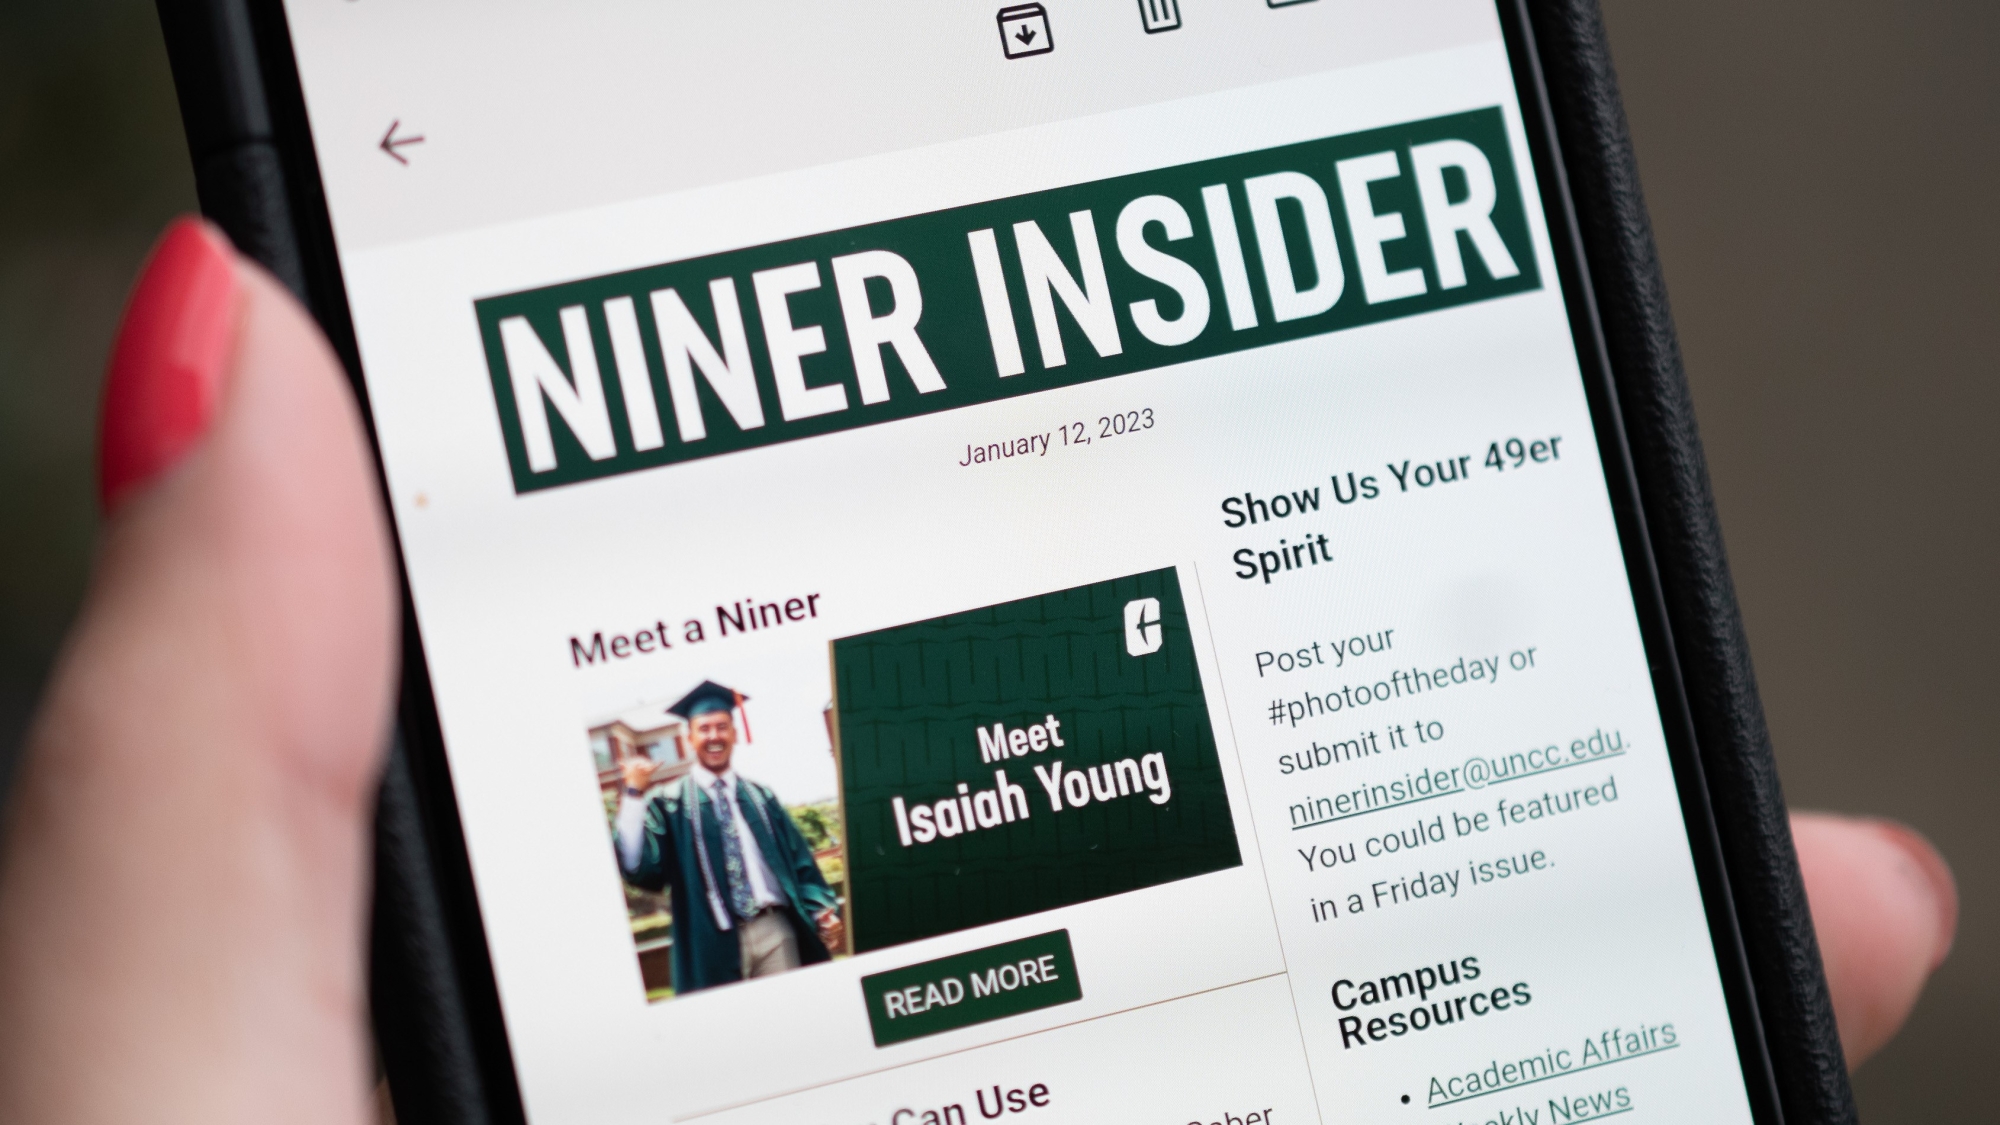 Meet Niner Insider